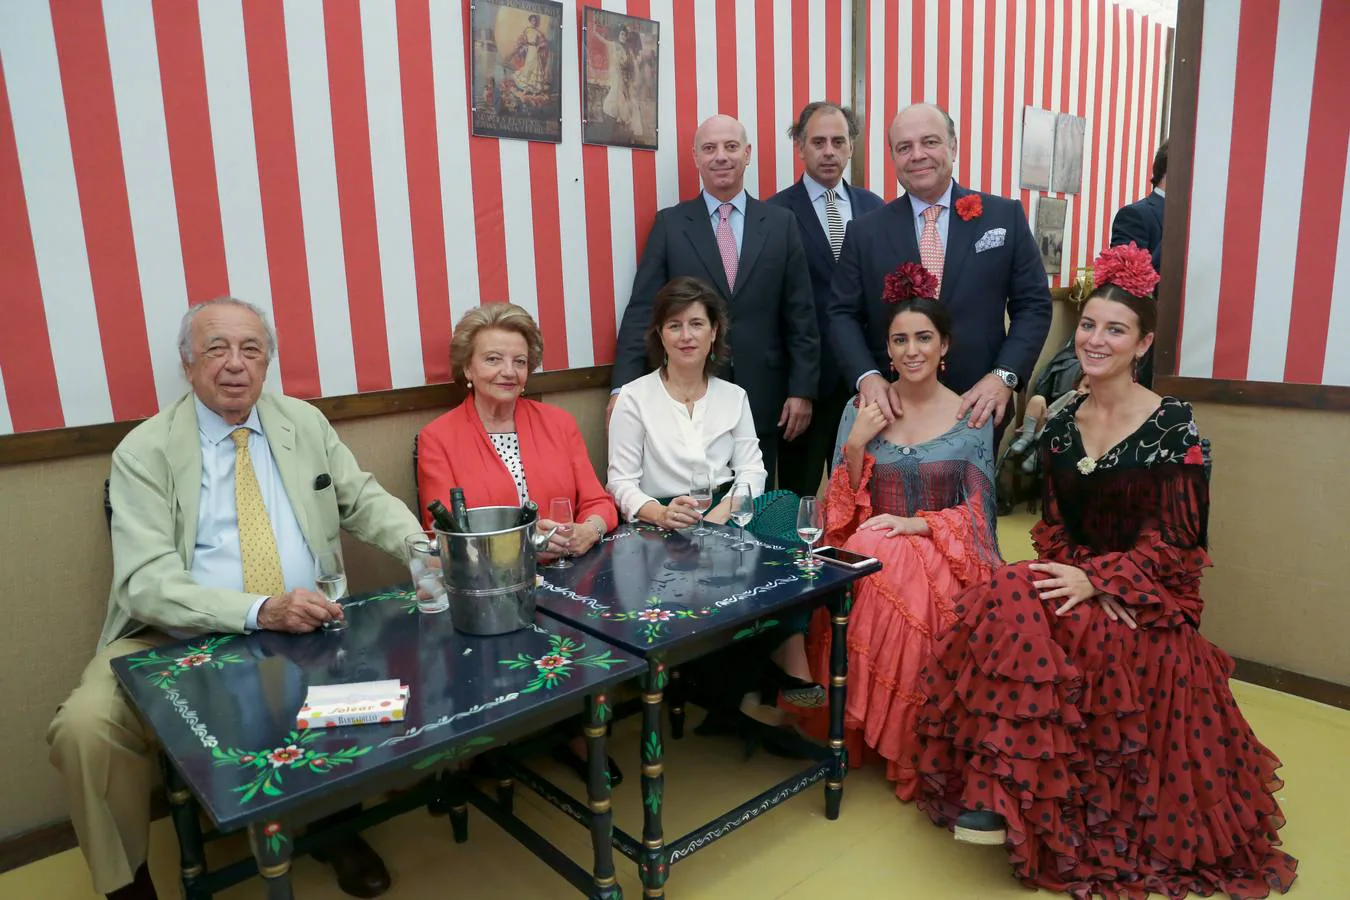 Manolo Muro, Magdalena Fernández de Peñaranda, María Cologan, Iván Ezcurra, Jerónimo Muro, Jesús Ezcurra, Marta Meneses y Marta Ezcurra